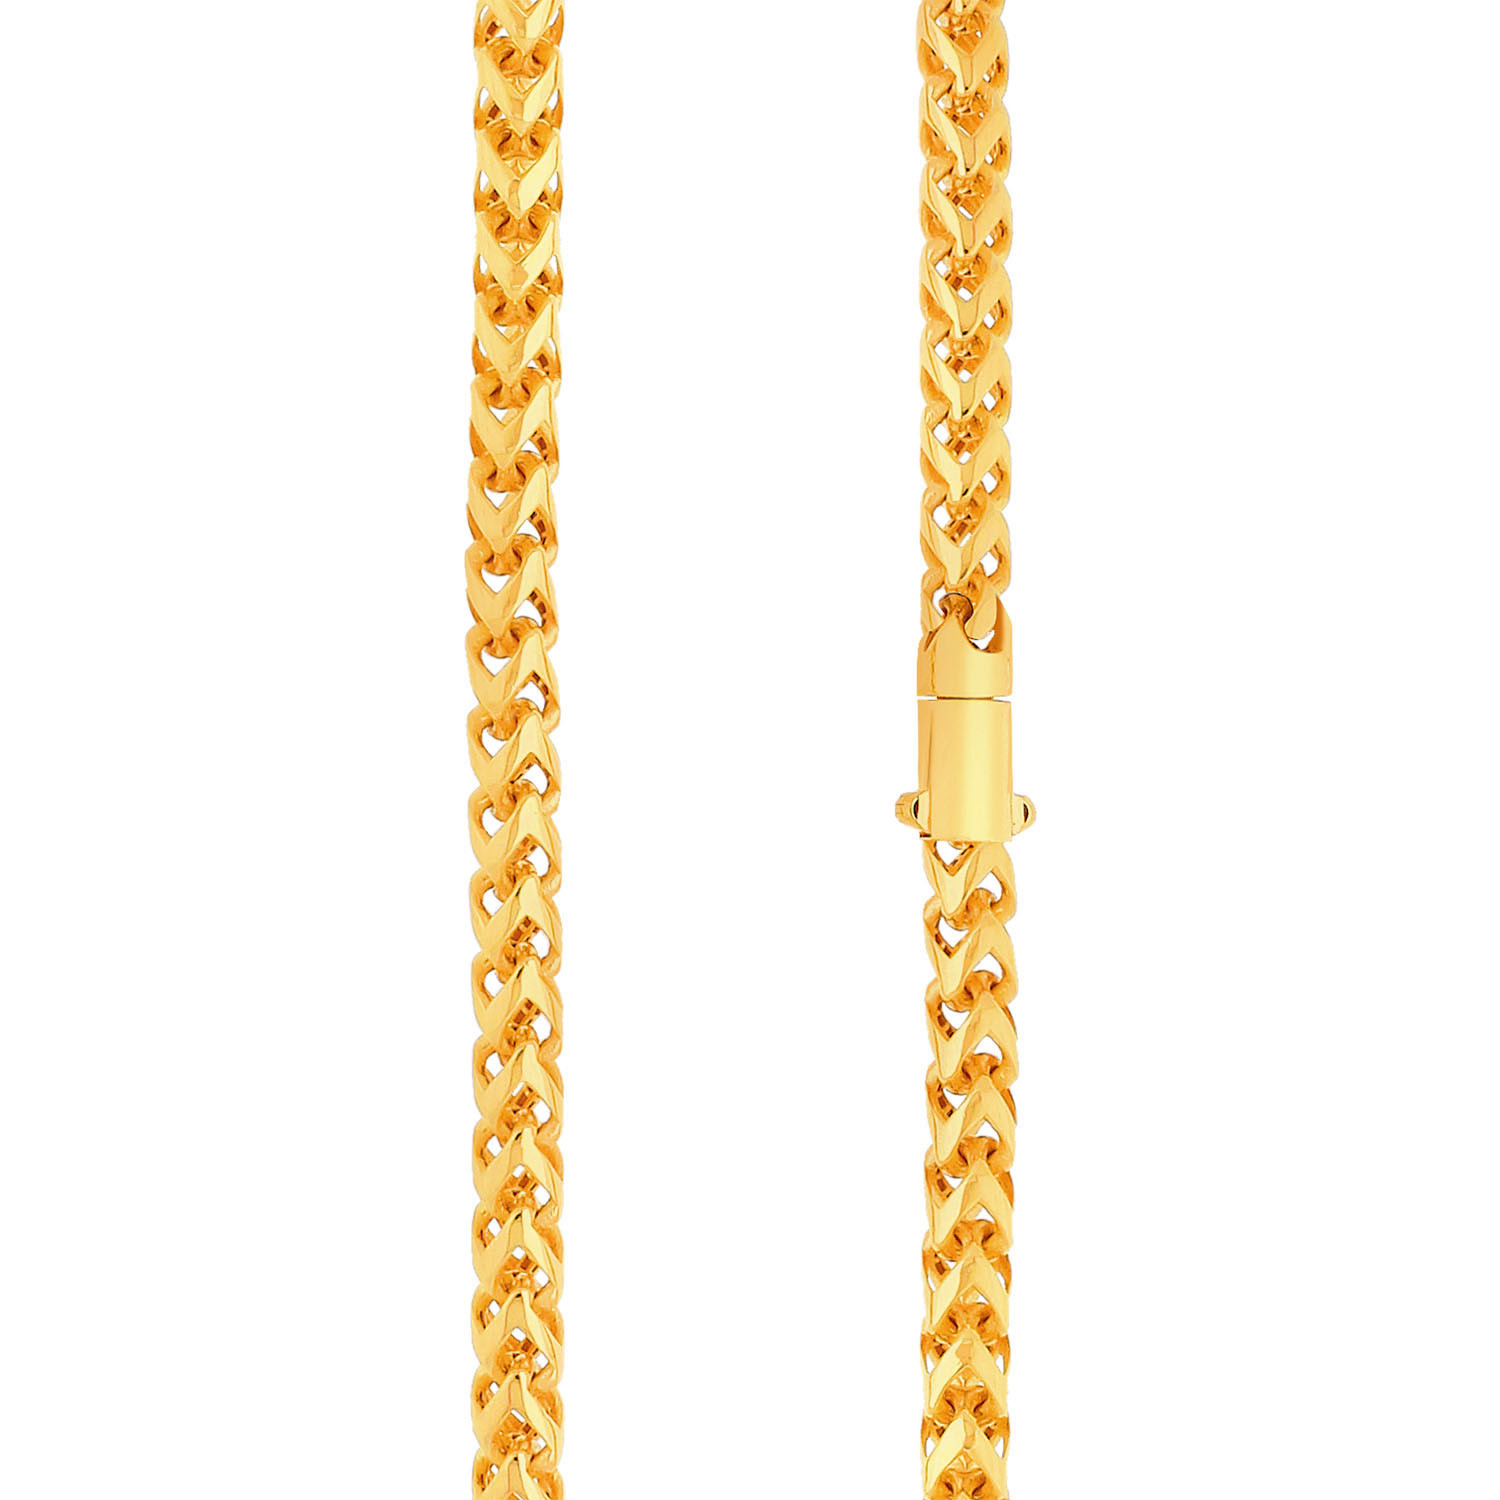 Malabar Gold Chain USLACHLGZBF005